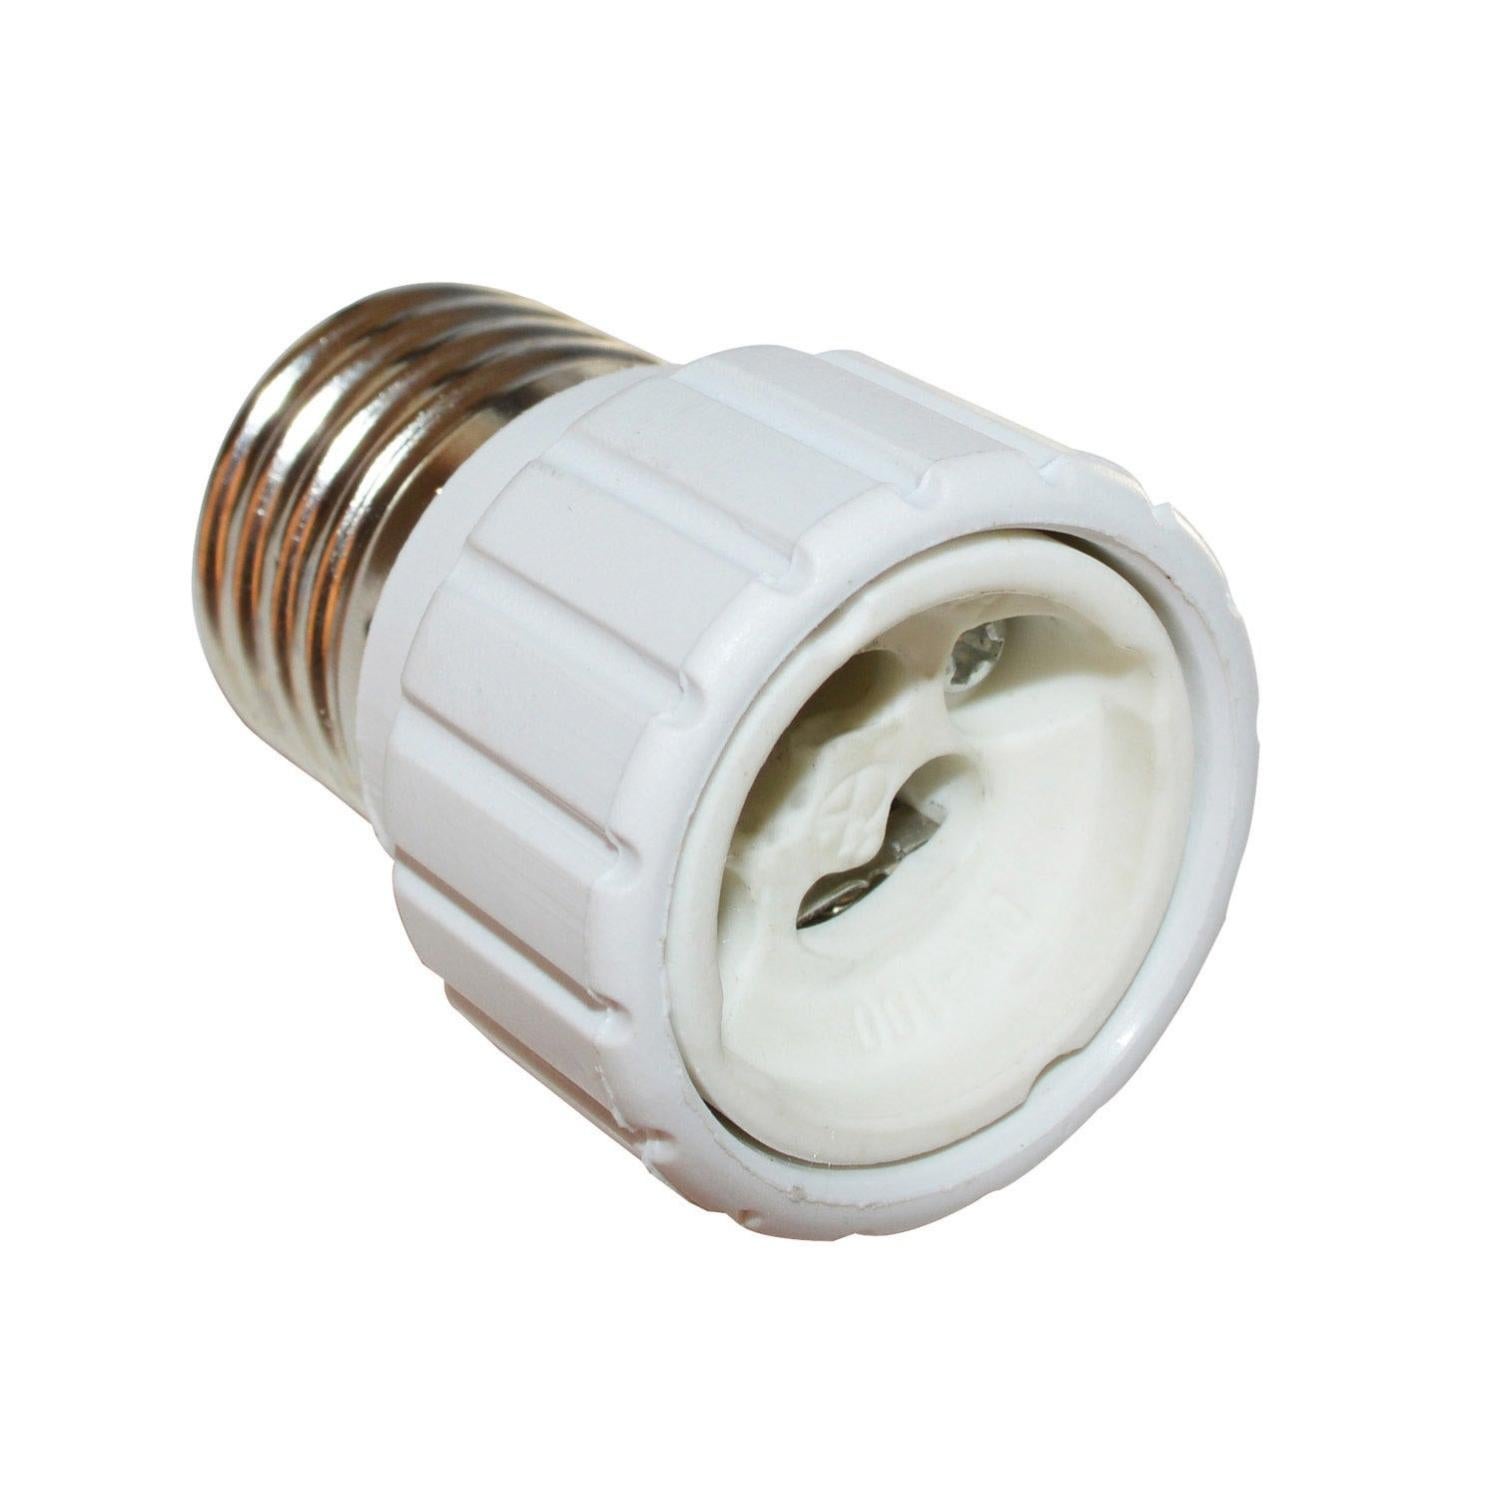 Adaptateur douille lampe 12v convertisseur e27 vers gu10 ampoule led